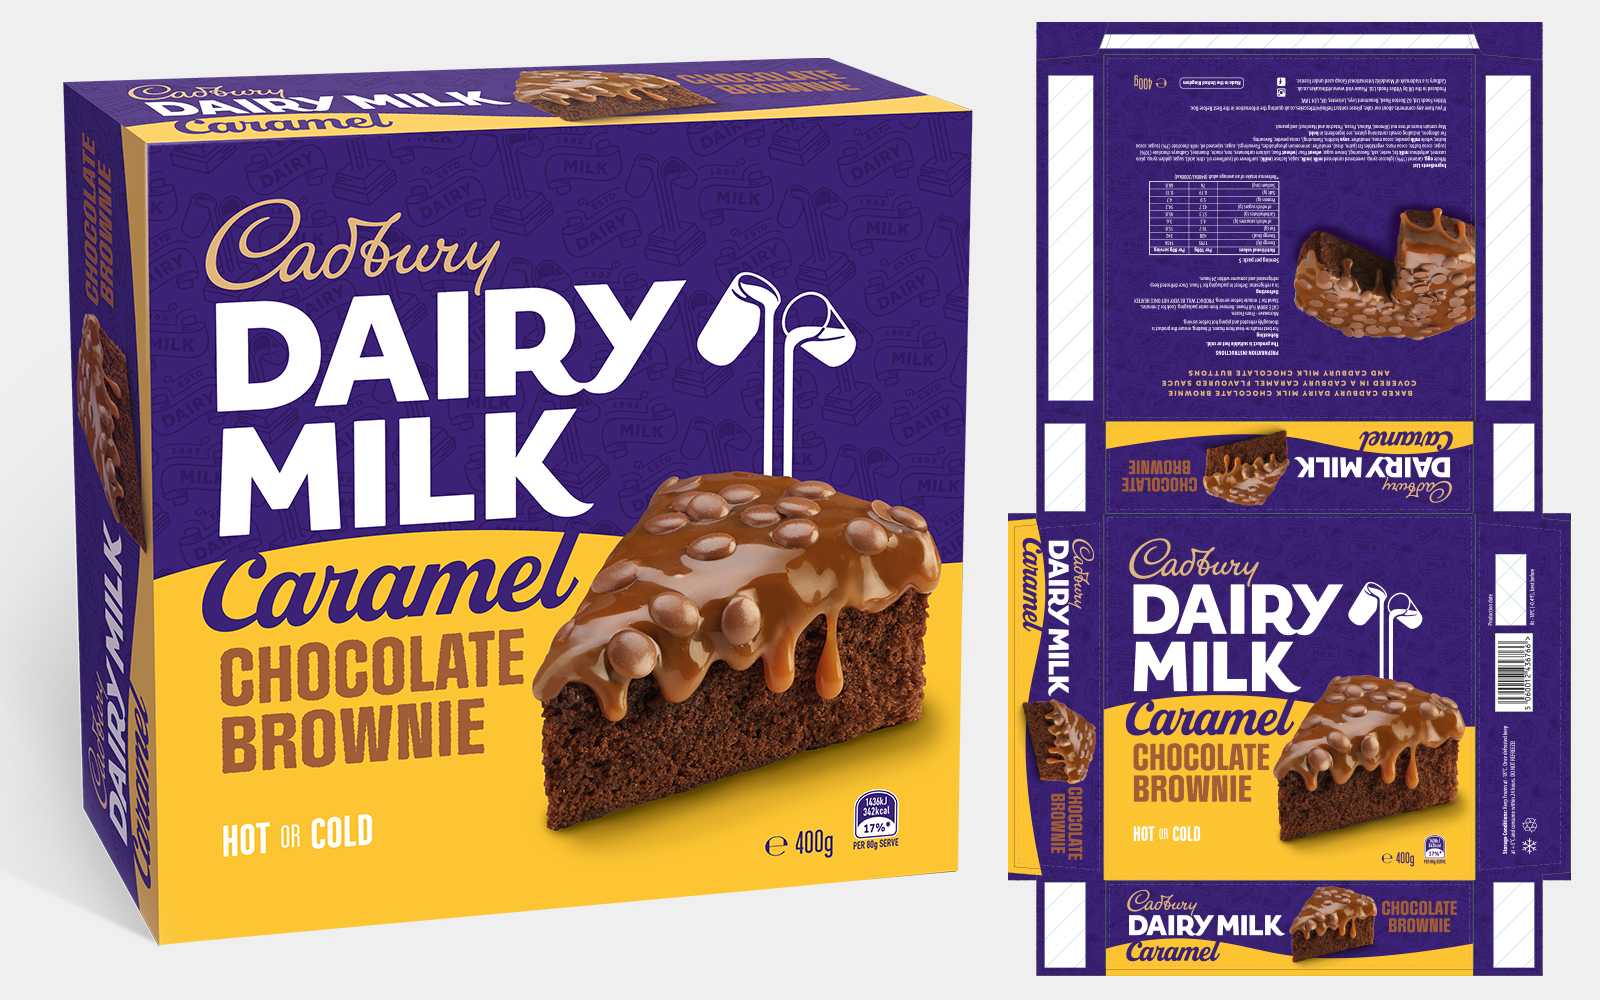 Cadbury caramel brownie packaging design